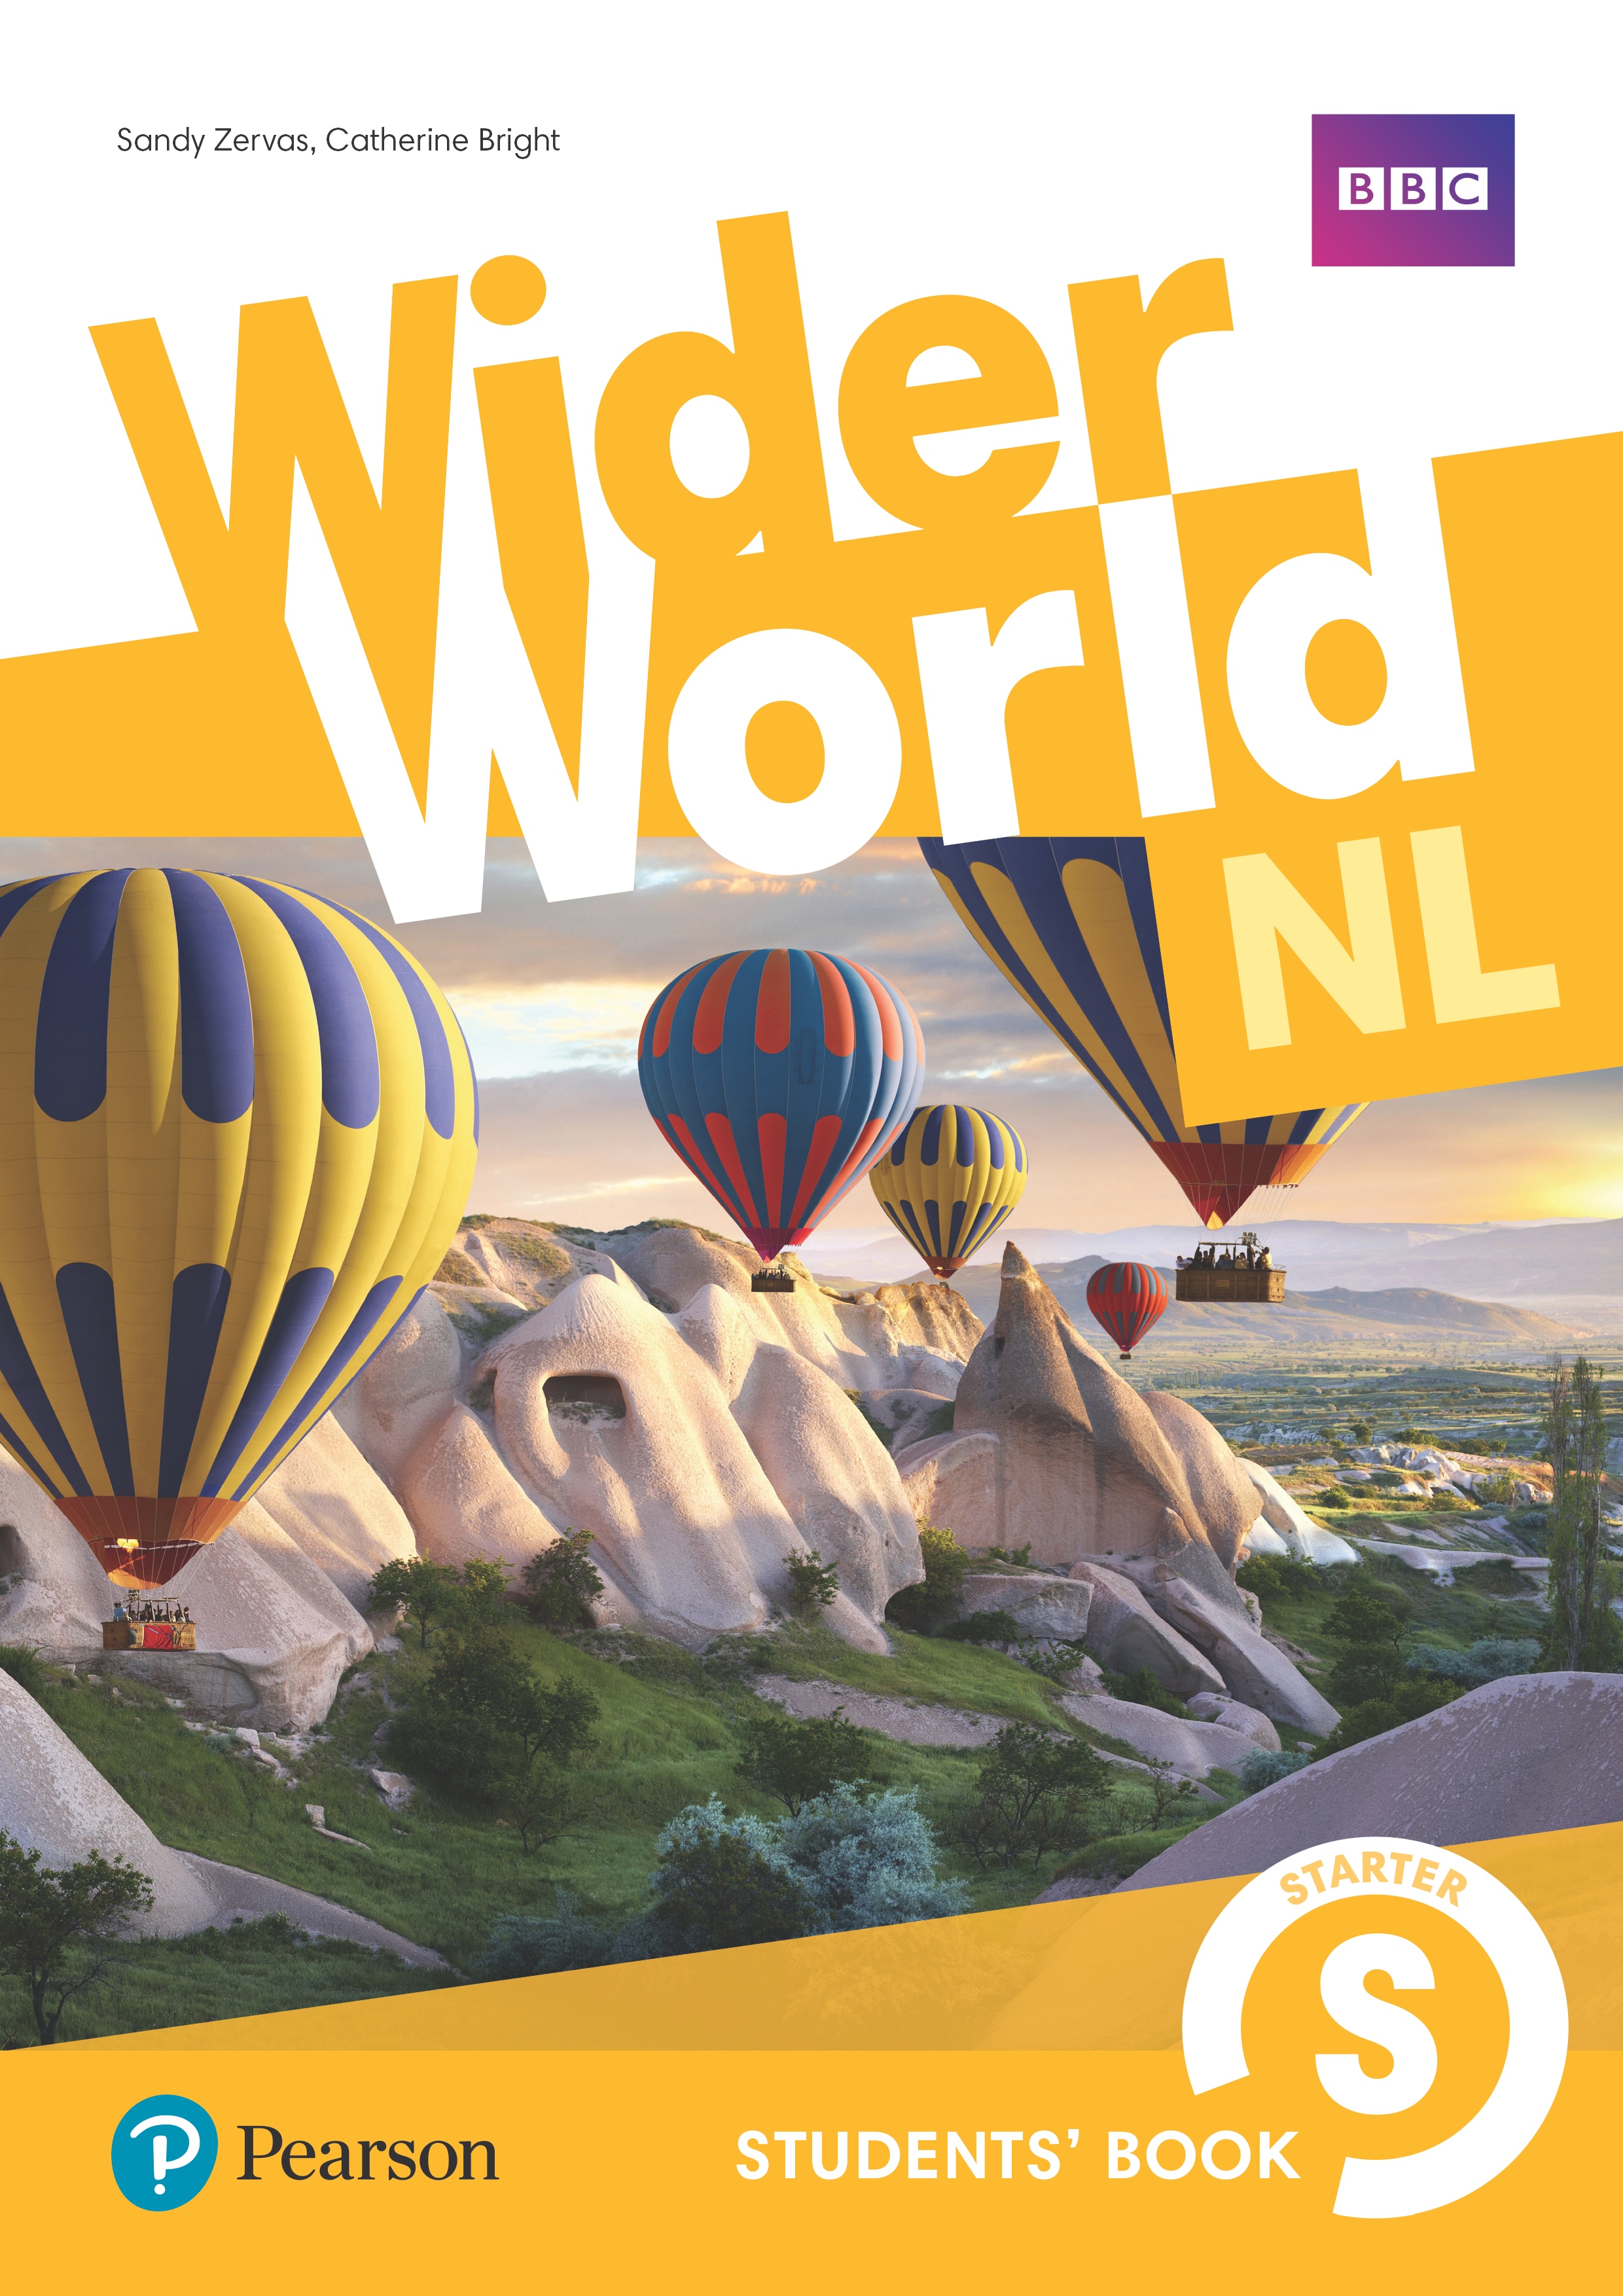 Wider World NL - methode Engels speciaal ontwikkeld voor Nederlandstalige leerlingen